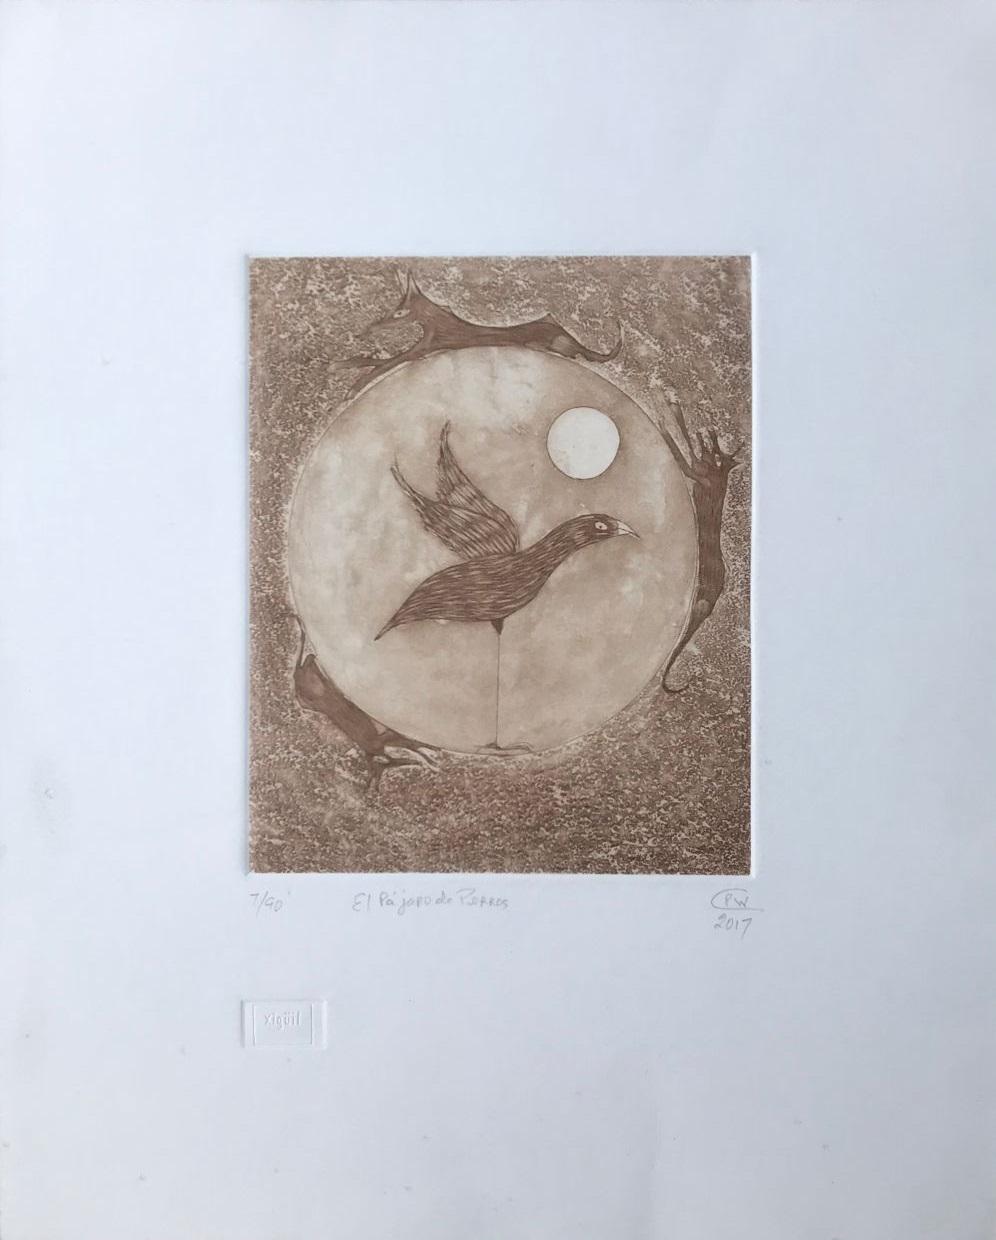 "Pablo Weisz Carrington (Mexico, 1947)
'El pajaro de perros', 2017
engraving, sugarlift on paper Deponte 300 g.
19.5 x 15.8 in. (49.5 x 40 cm.)
Edition of 90
ID: CAR-201"